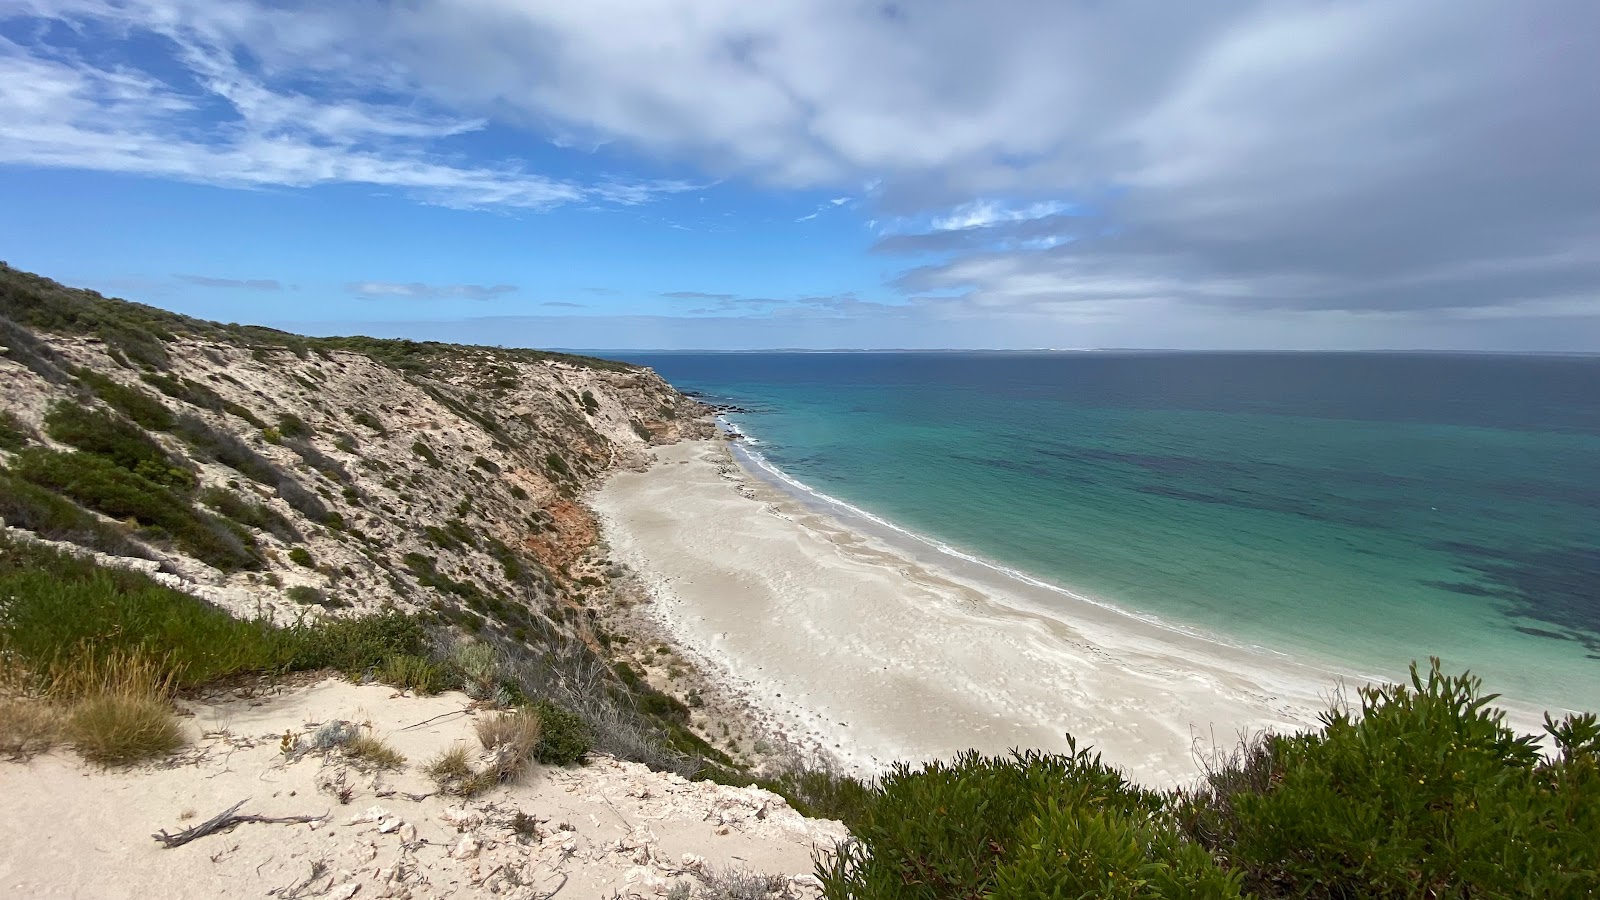 Gallipoli Beach'in fotoğrafı geniş plaj ile birlikte